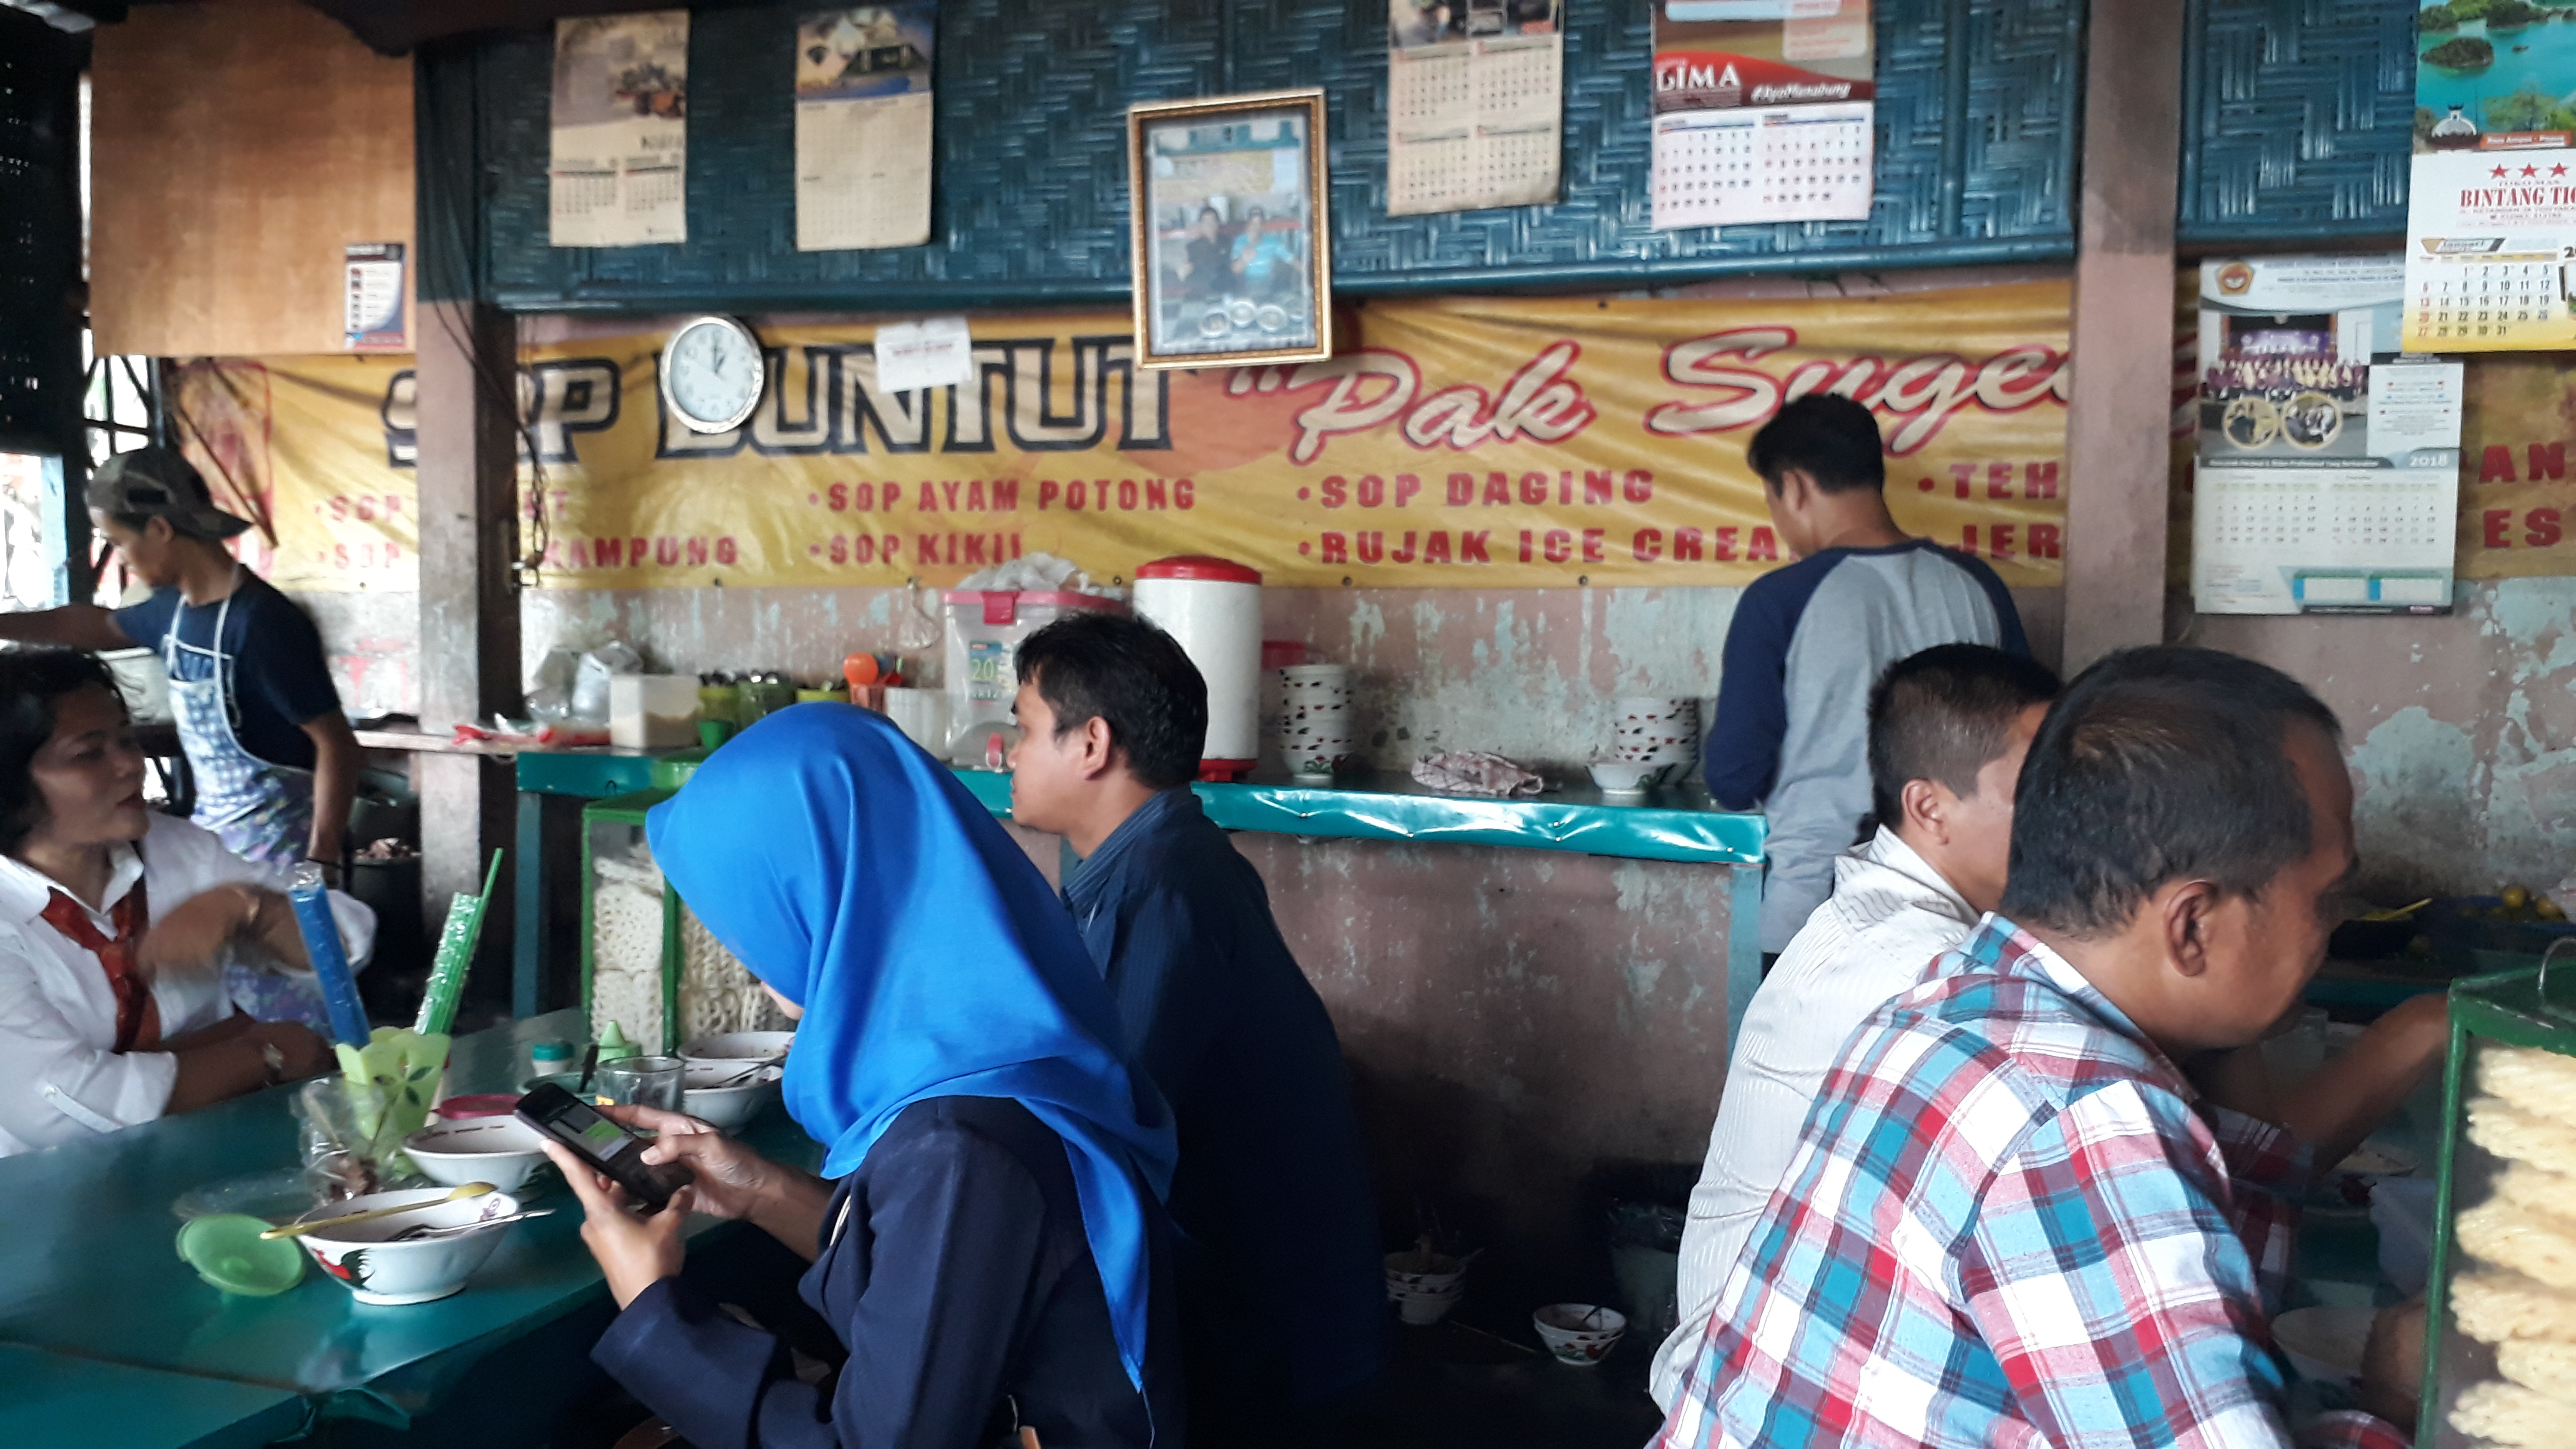 Sop Buntut Pak Sugeng HOS Cokroaminoto Yogyakarta Patut Anda Coba